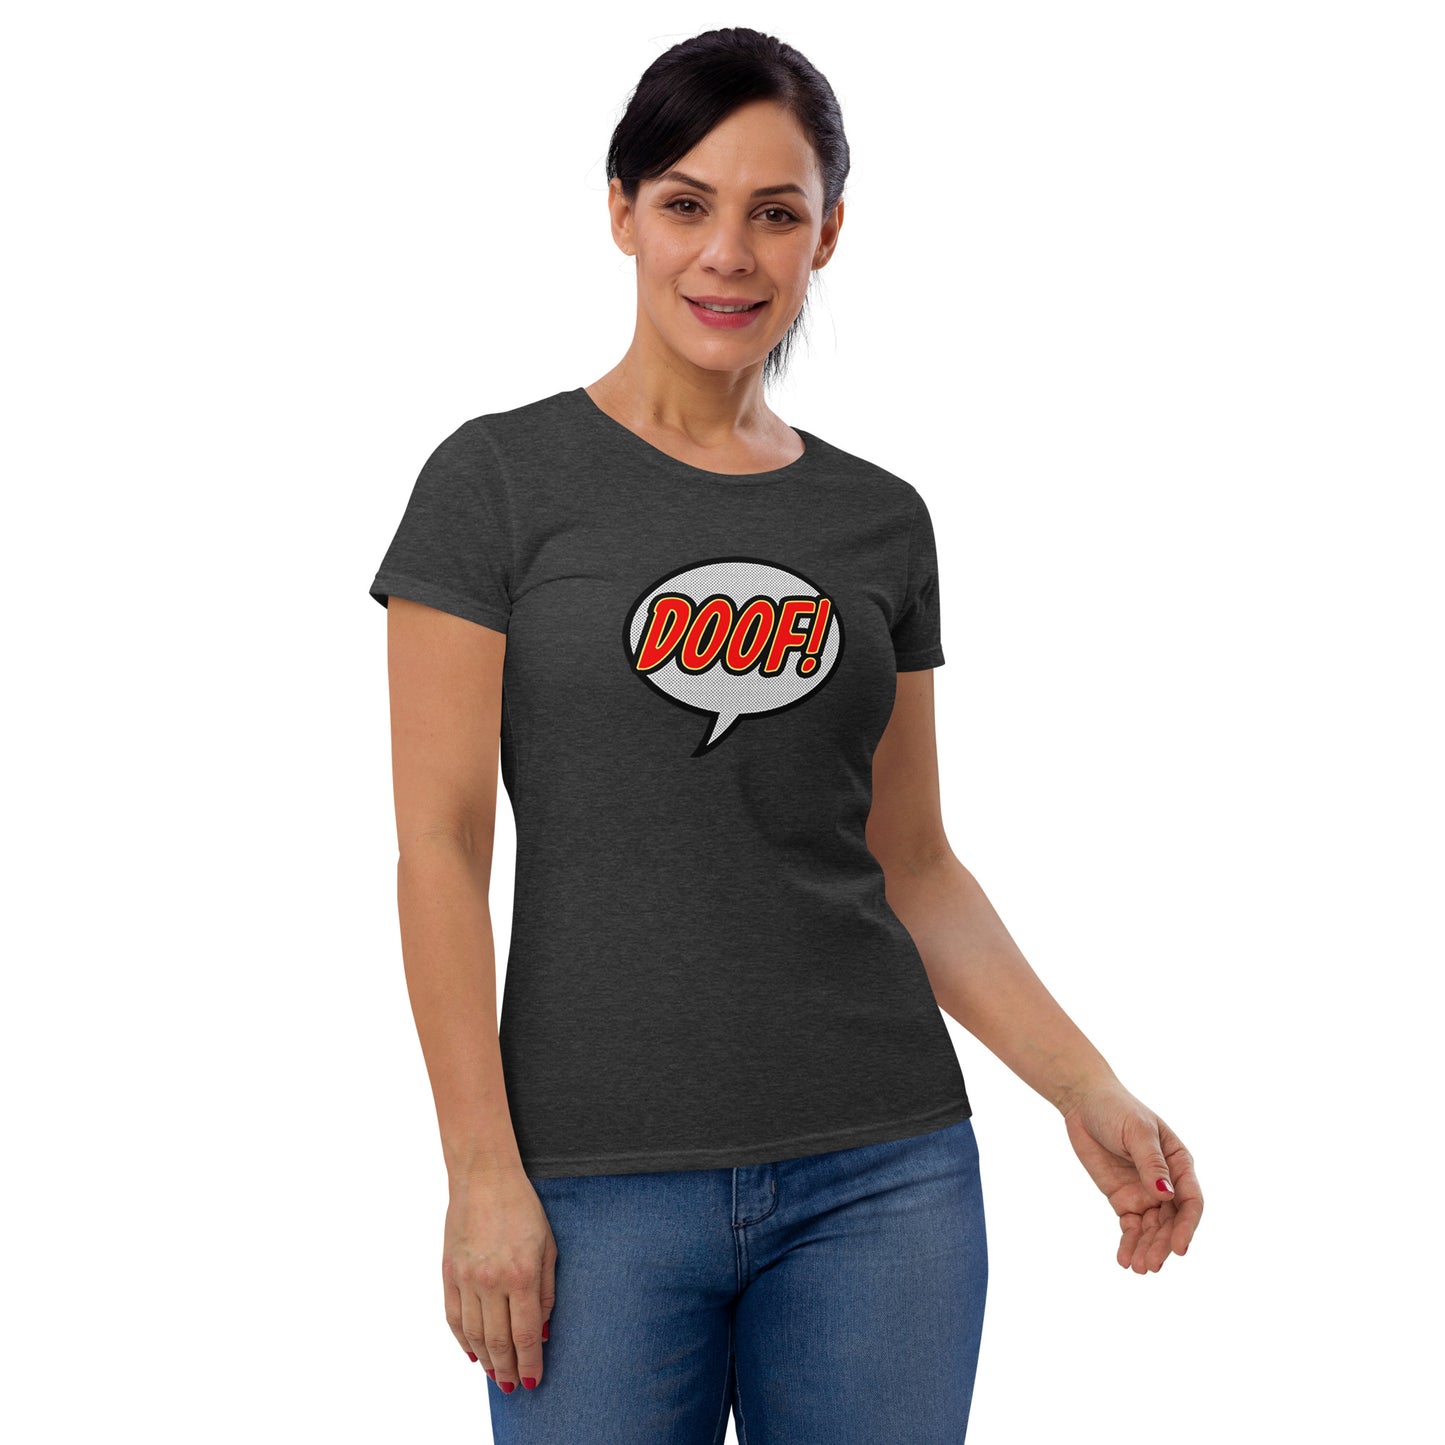 Doof T-Shirt, Women's Fit